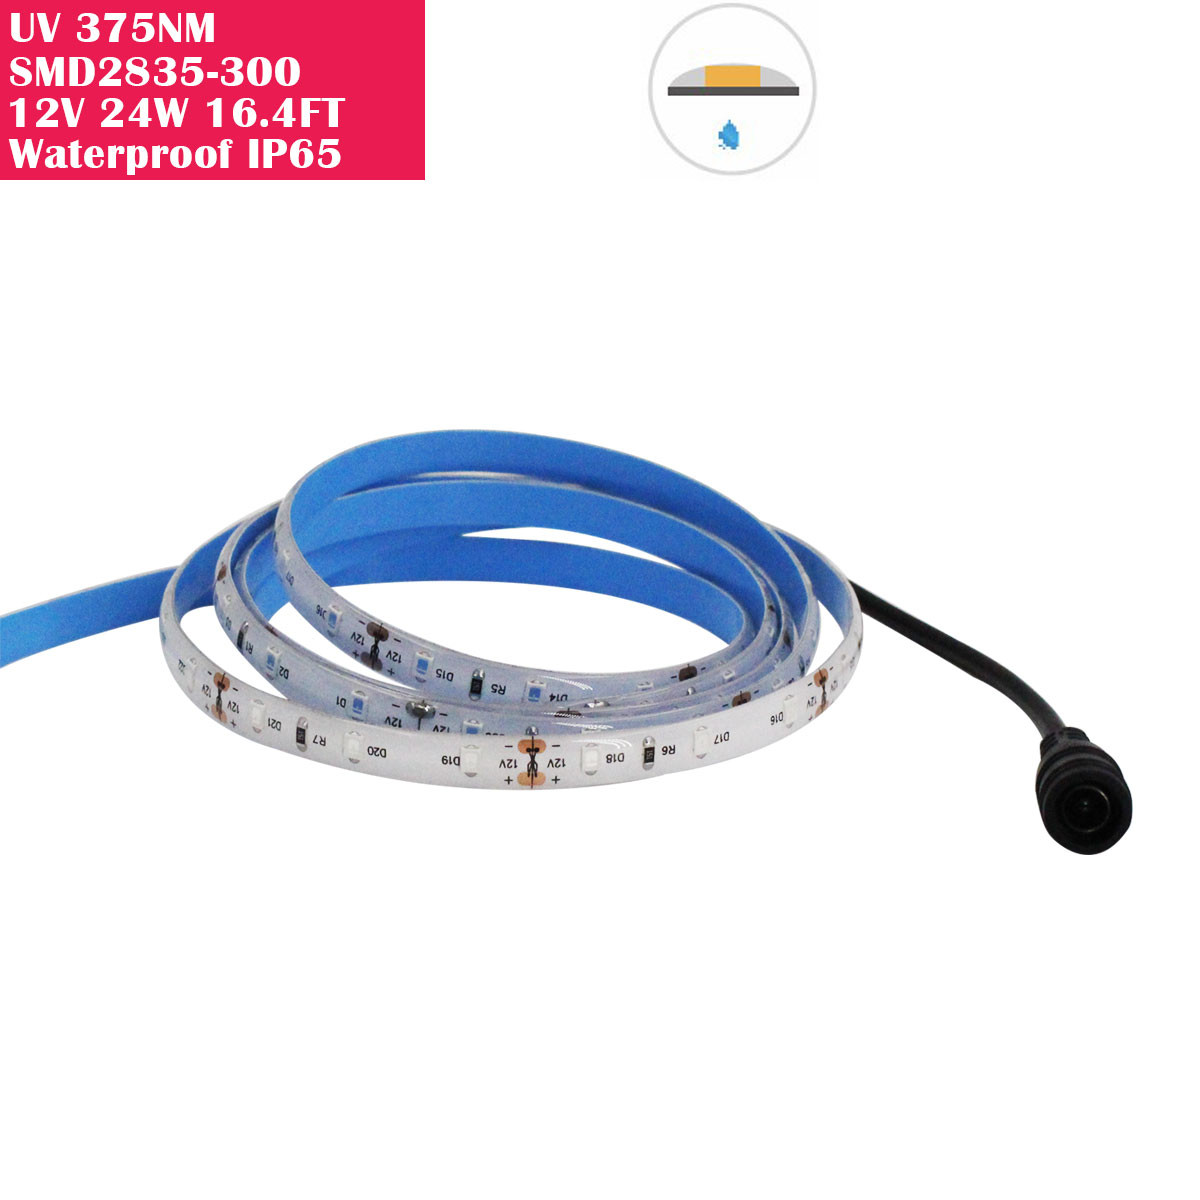 UV LED Kit 24W 375nm-380nm|LED-lights.com